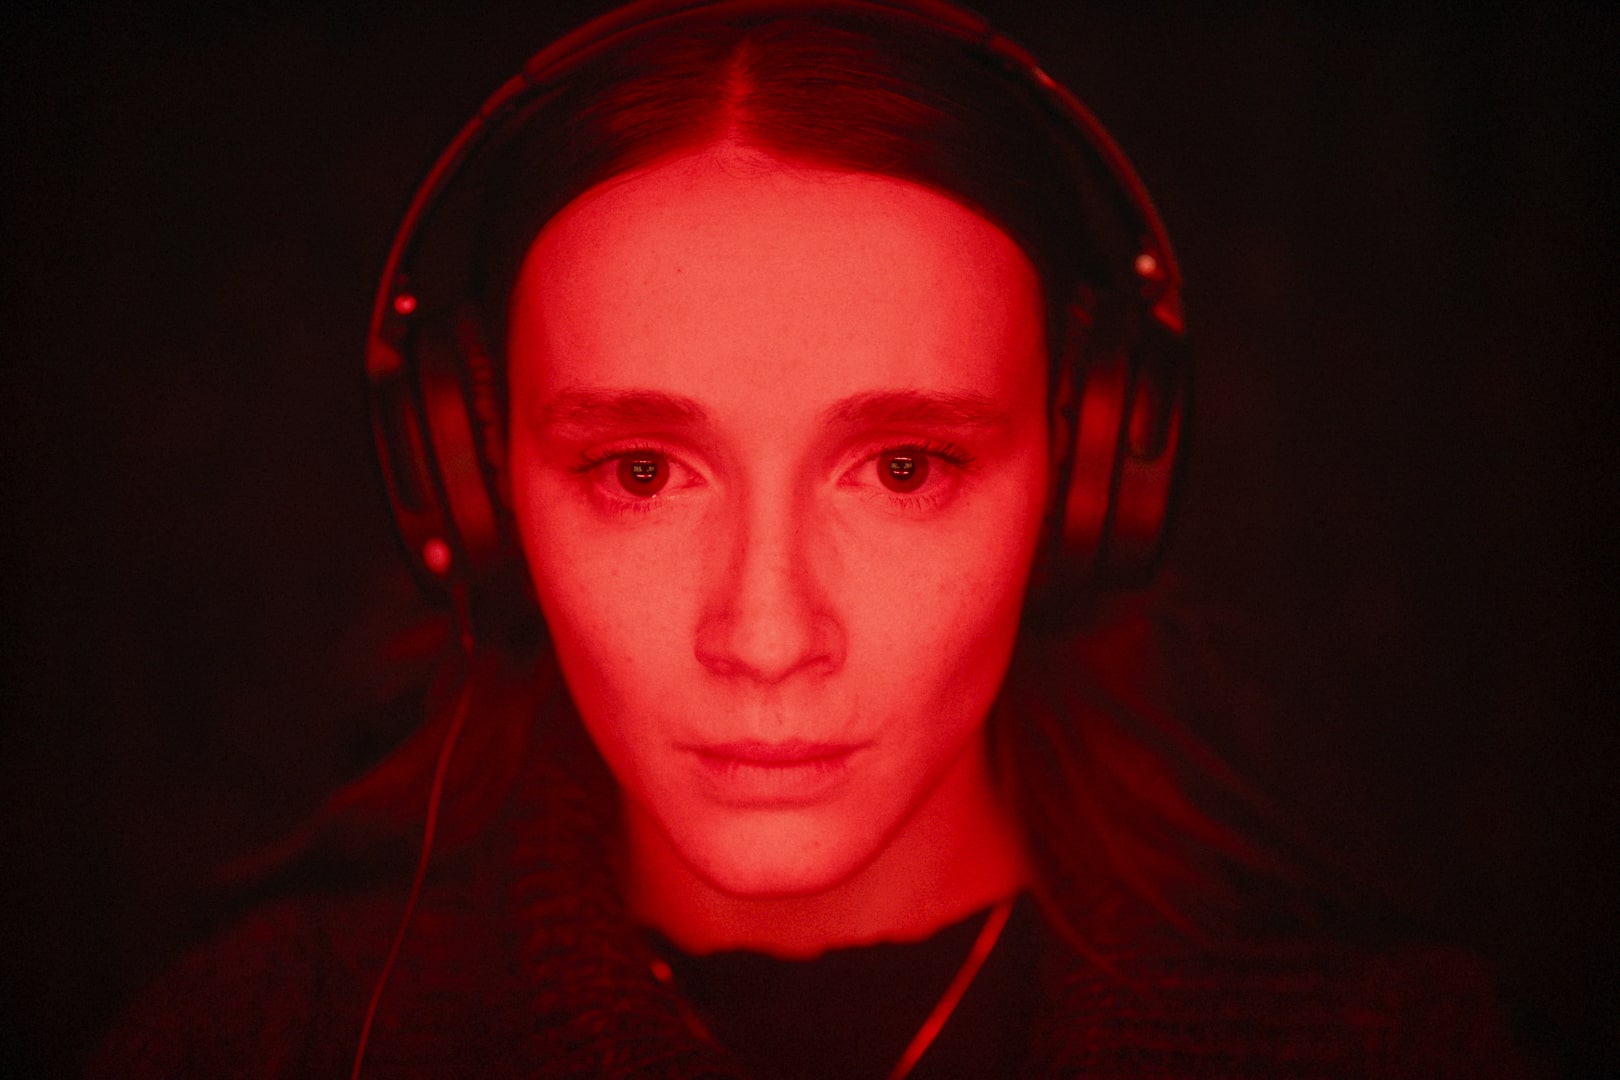 Eine junge Frau im Rotlicht im Porträt mit Kopfhörern